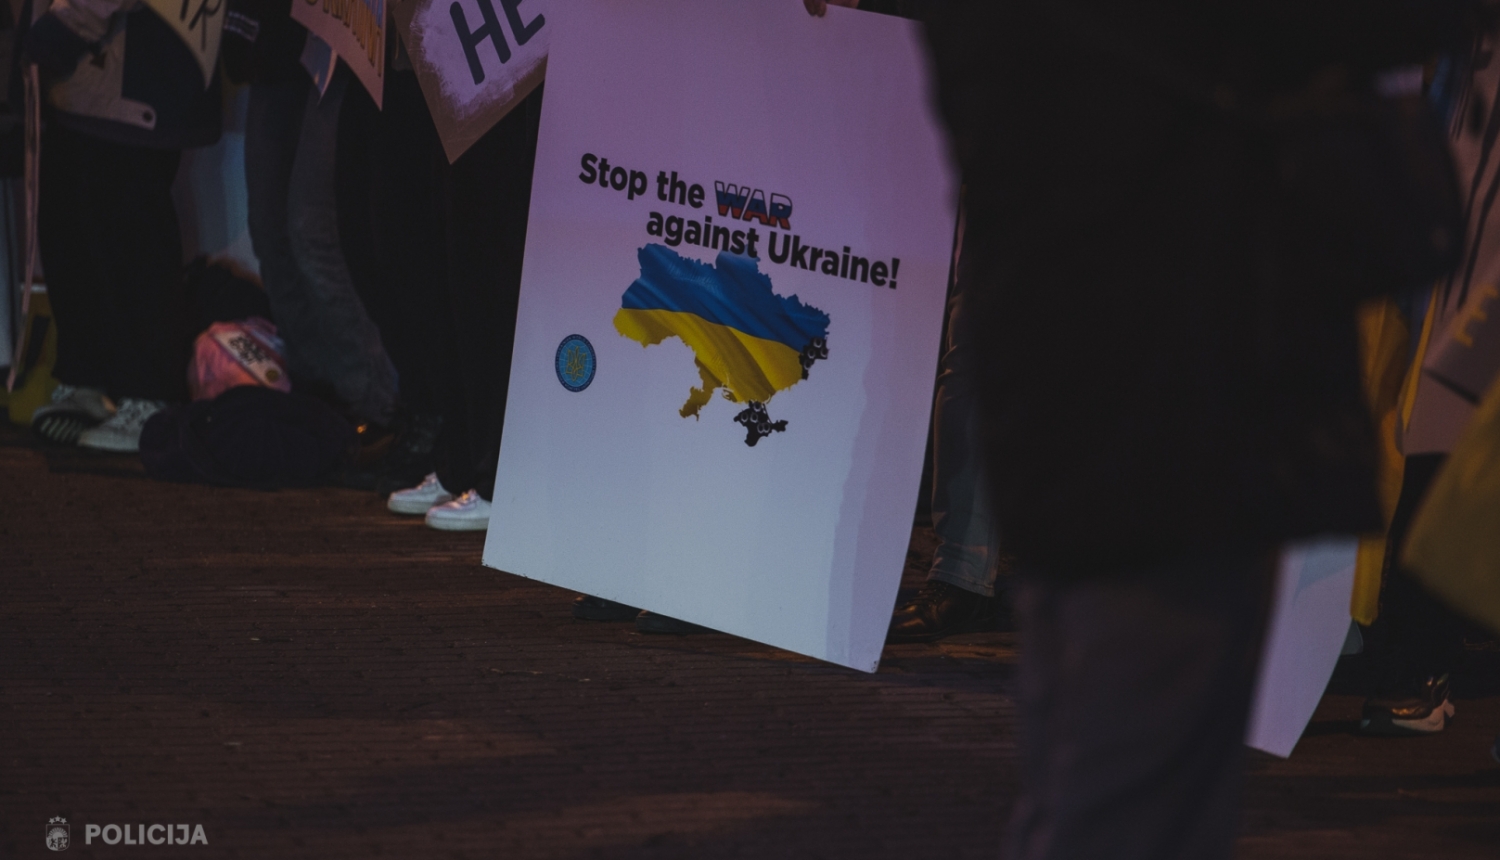 Plakāts ar uzrakstu "Stop war against Ukraine" tulkojumā - apturiet karu pret Ukrainu